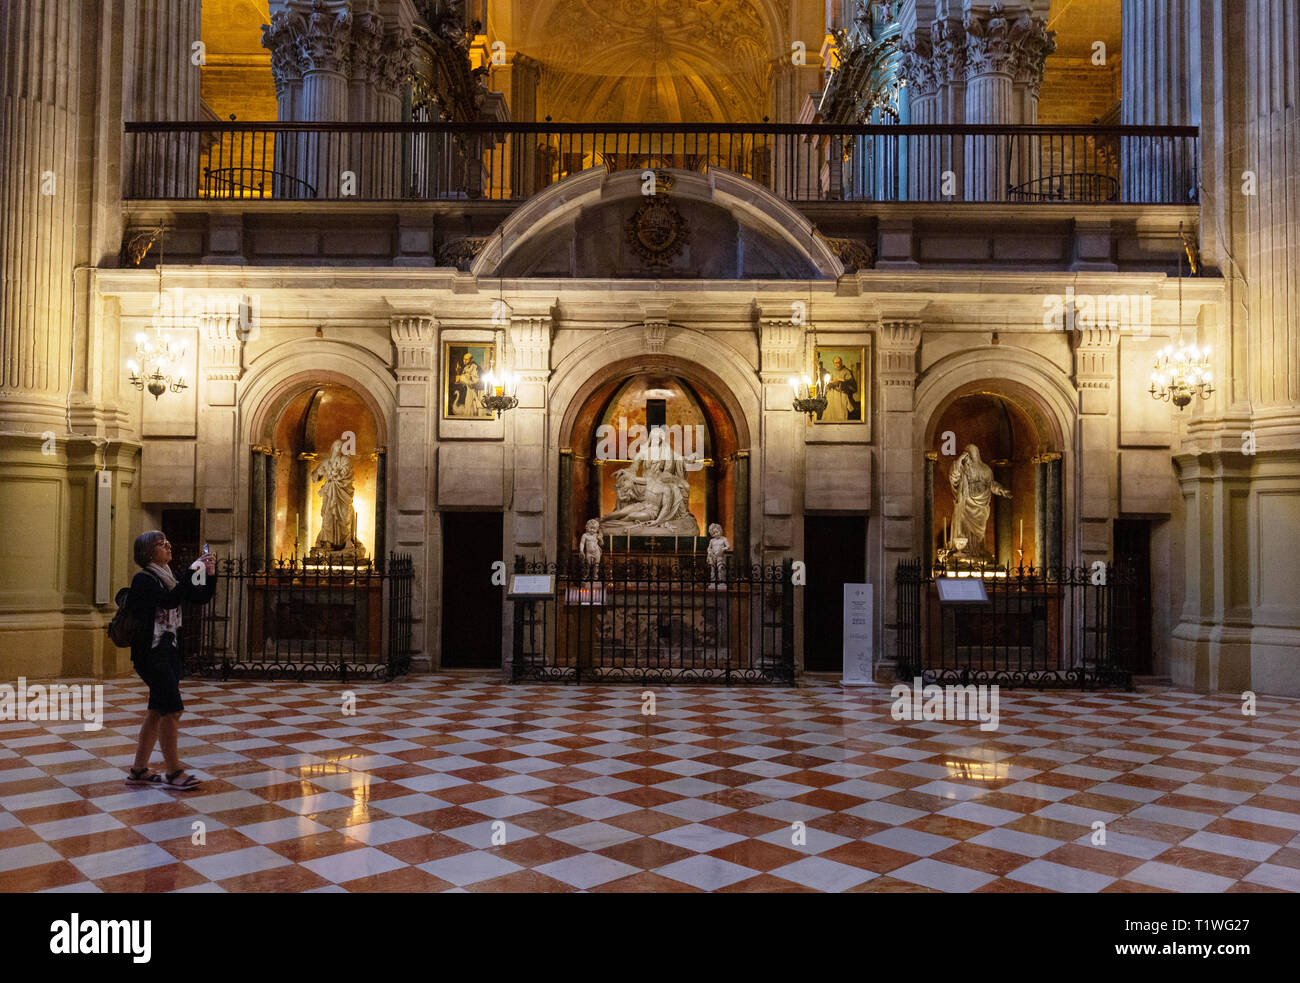 Interior de la Catedral de Málaga - las capillas del Trascoro, y un turista toma una foto de la Catedral de Málaga, Málaga, Andalucía, España Foto de stock